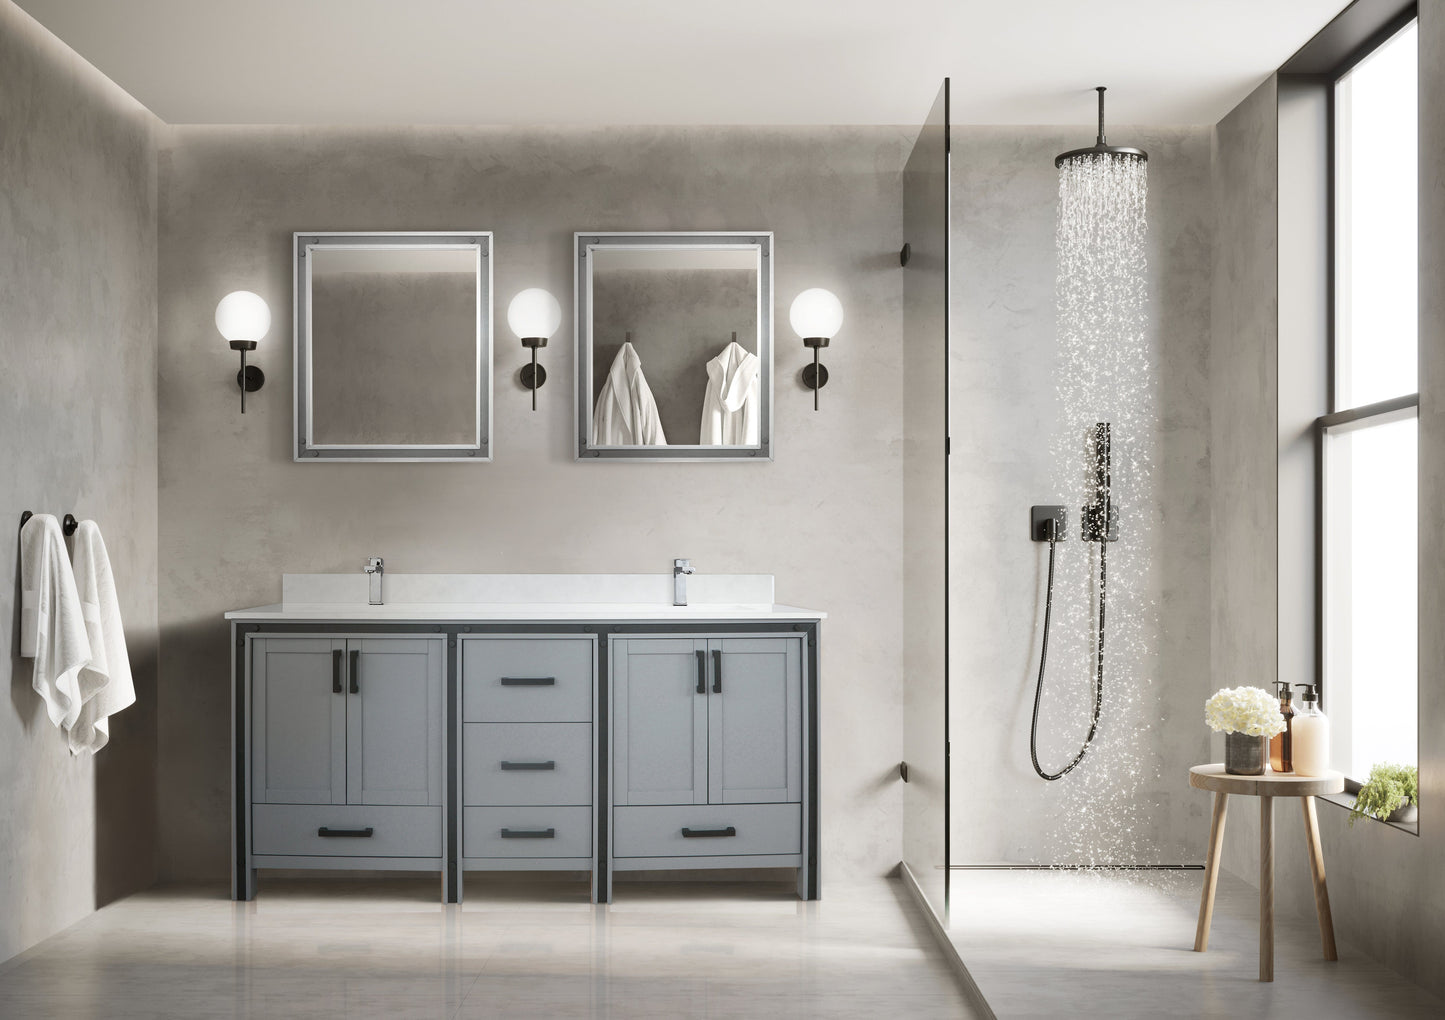 Bell + Modern Bathroom Vanity Dark Grey / No Countertop / No Mirror Augustine 72" x 22" Double Bath Vanity